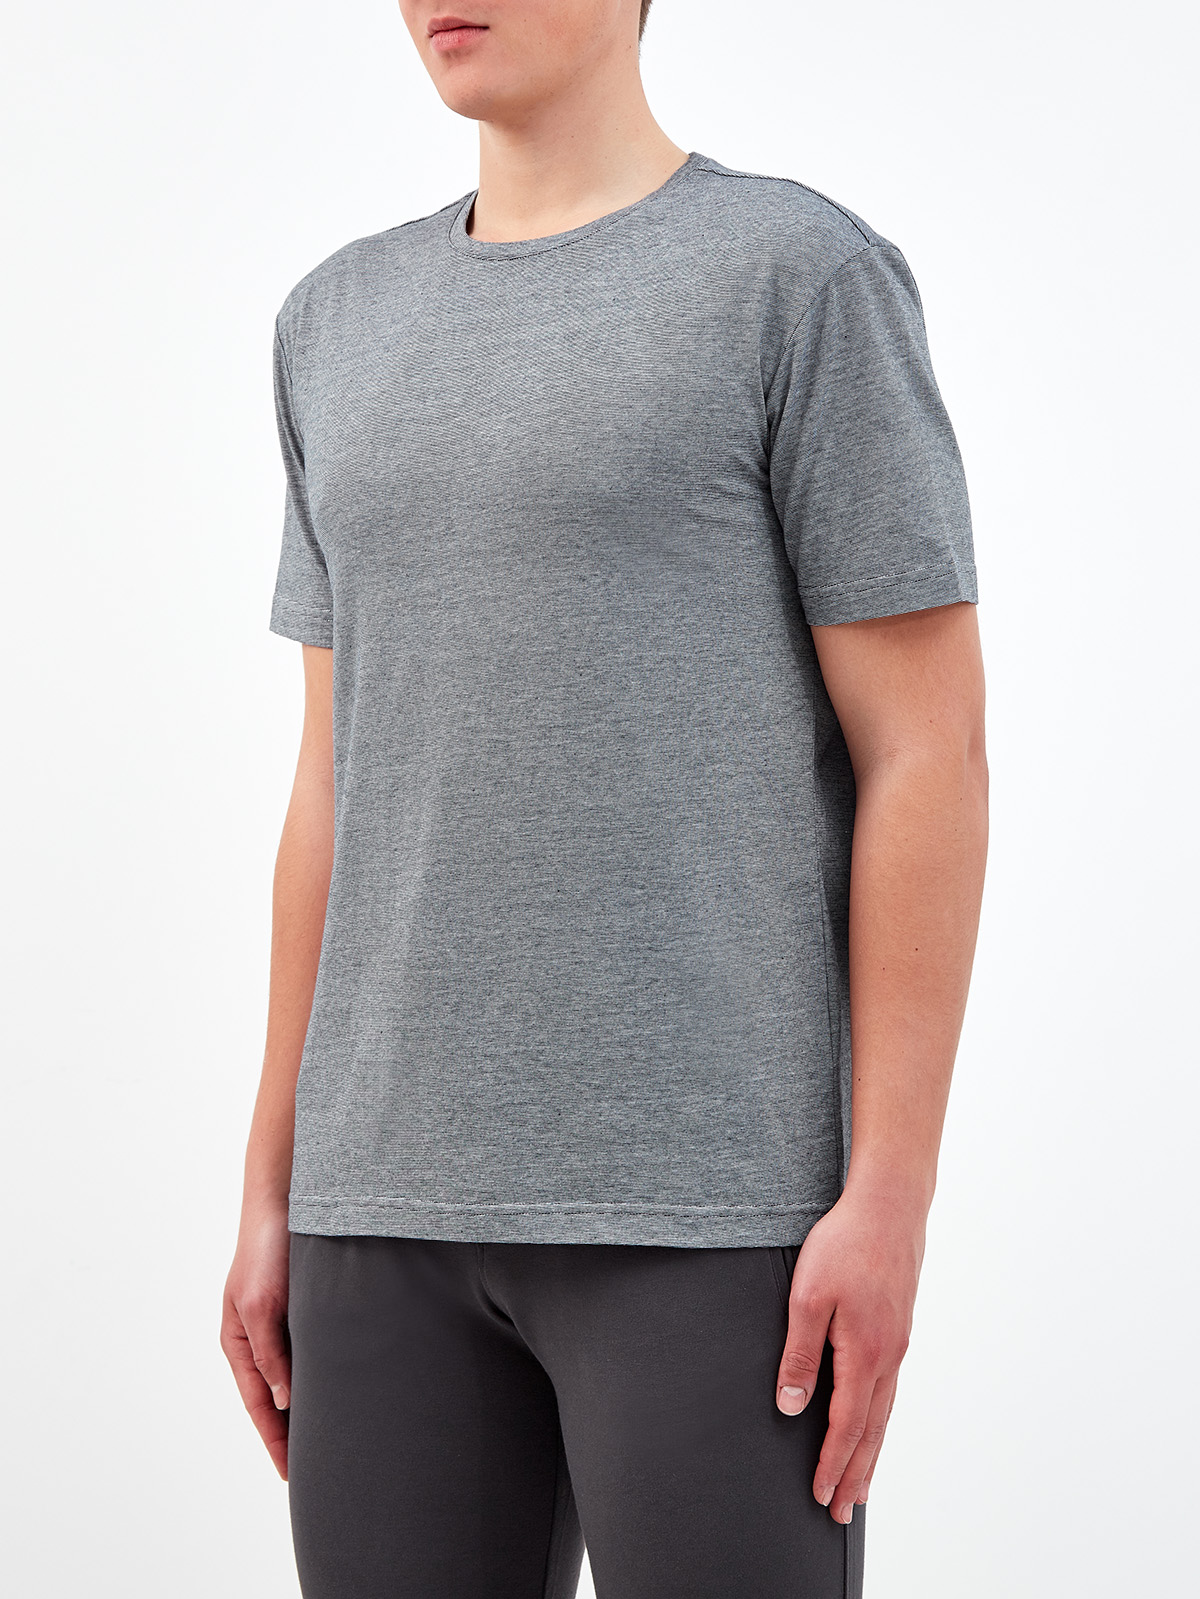 Хлопковая футболка с переплетением серых и белых волокон CUDGI, цвет серый, размер L;XL;2XL;4XL;5XL - фото 3